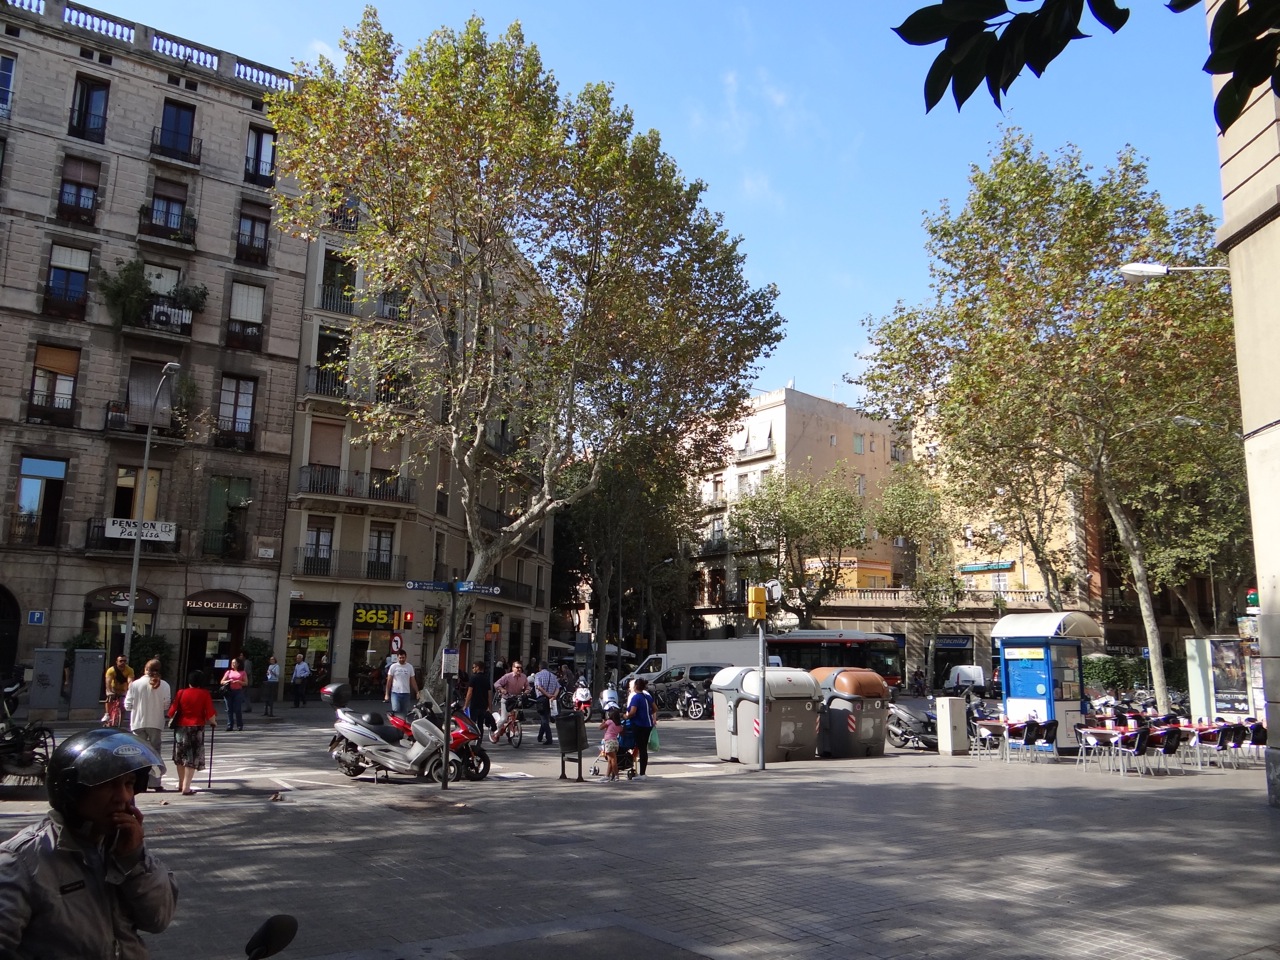 Barselona little square